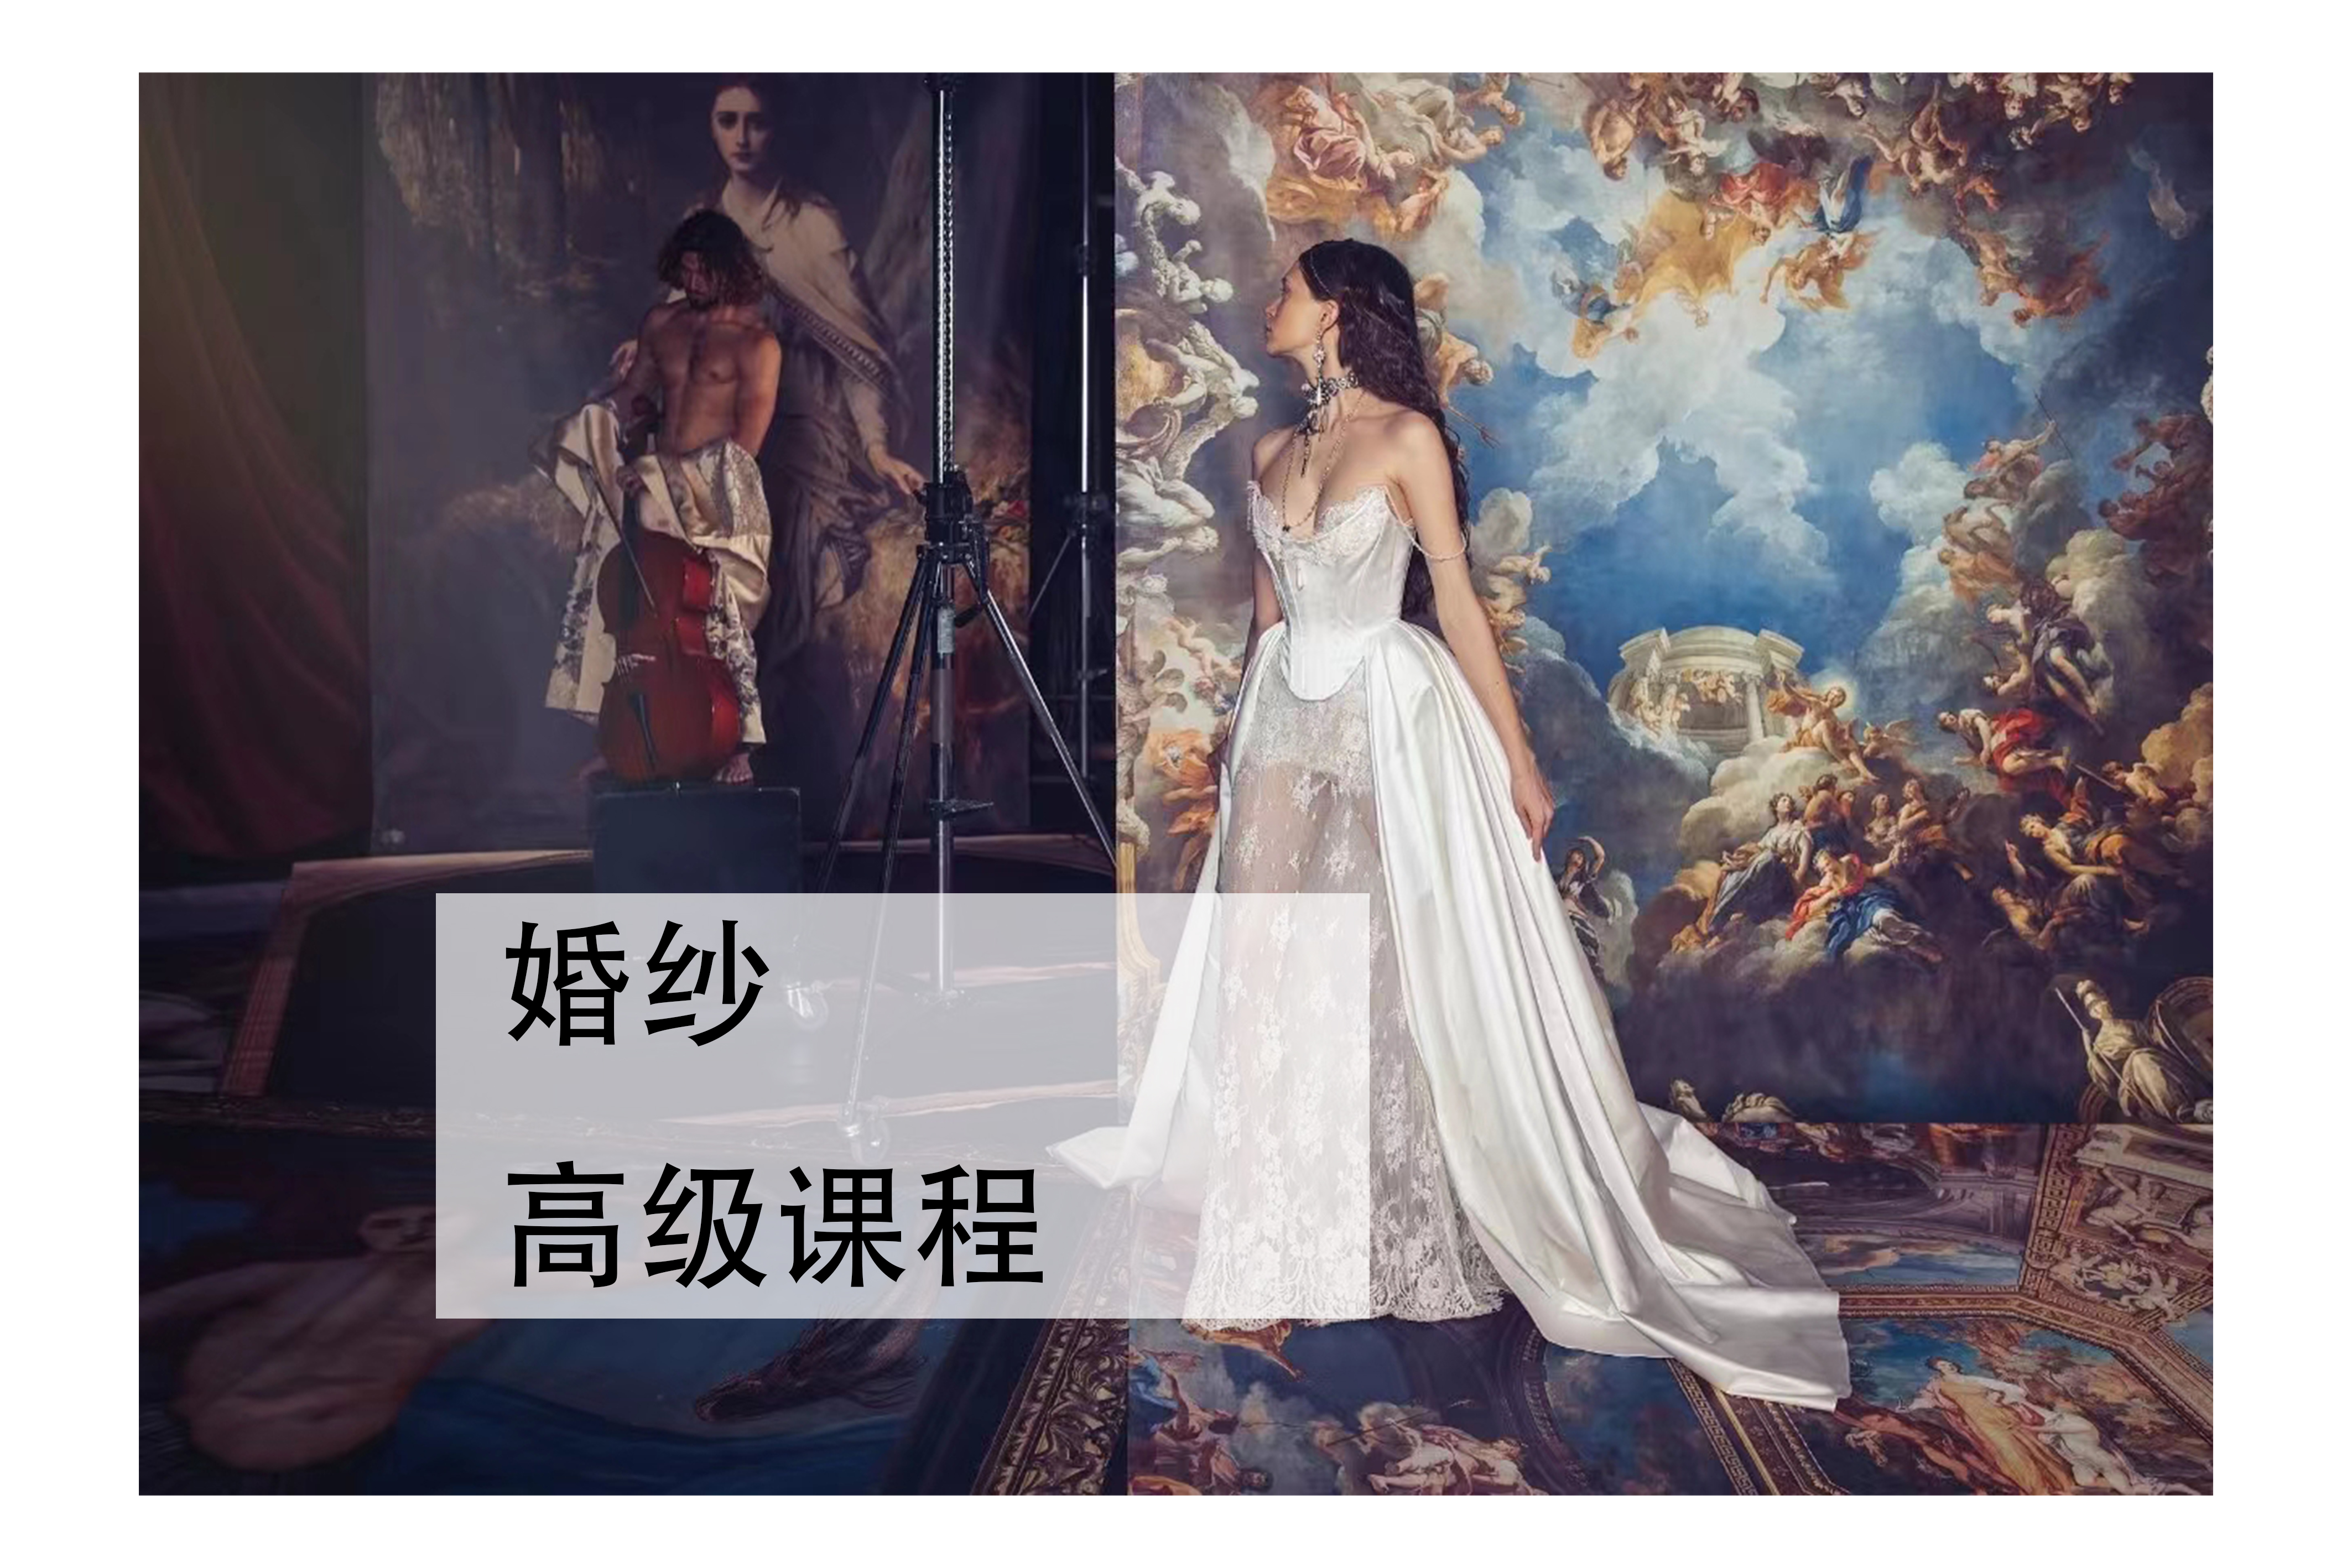 IAS服装设计学院深圳婚纱设计高级课程图片